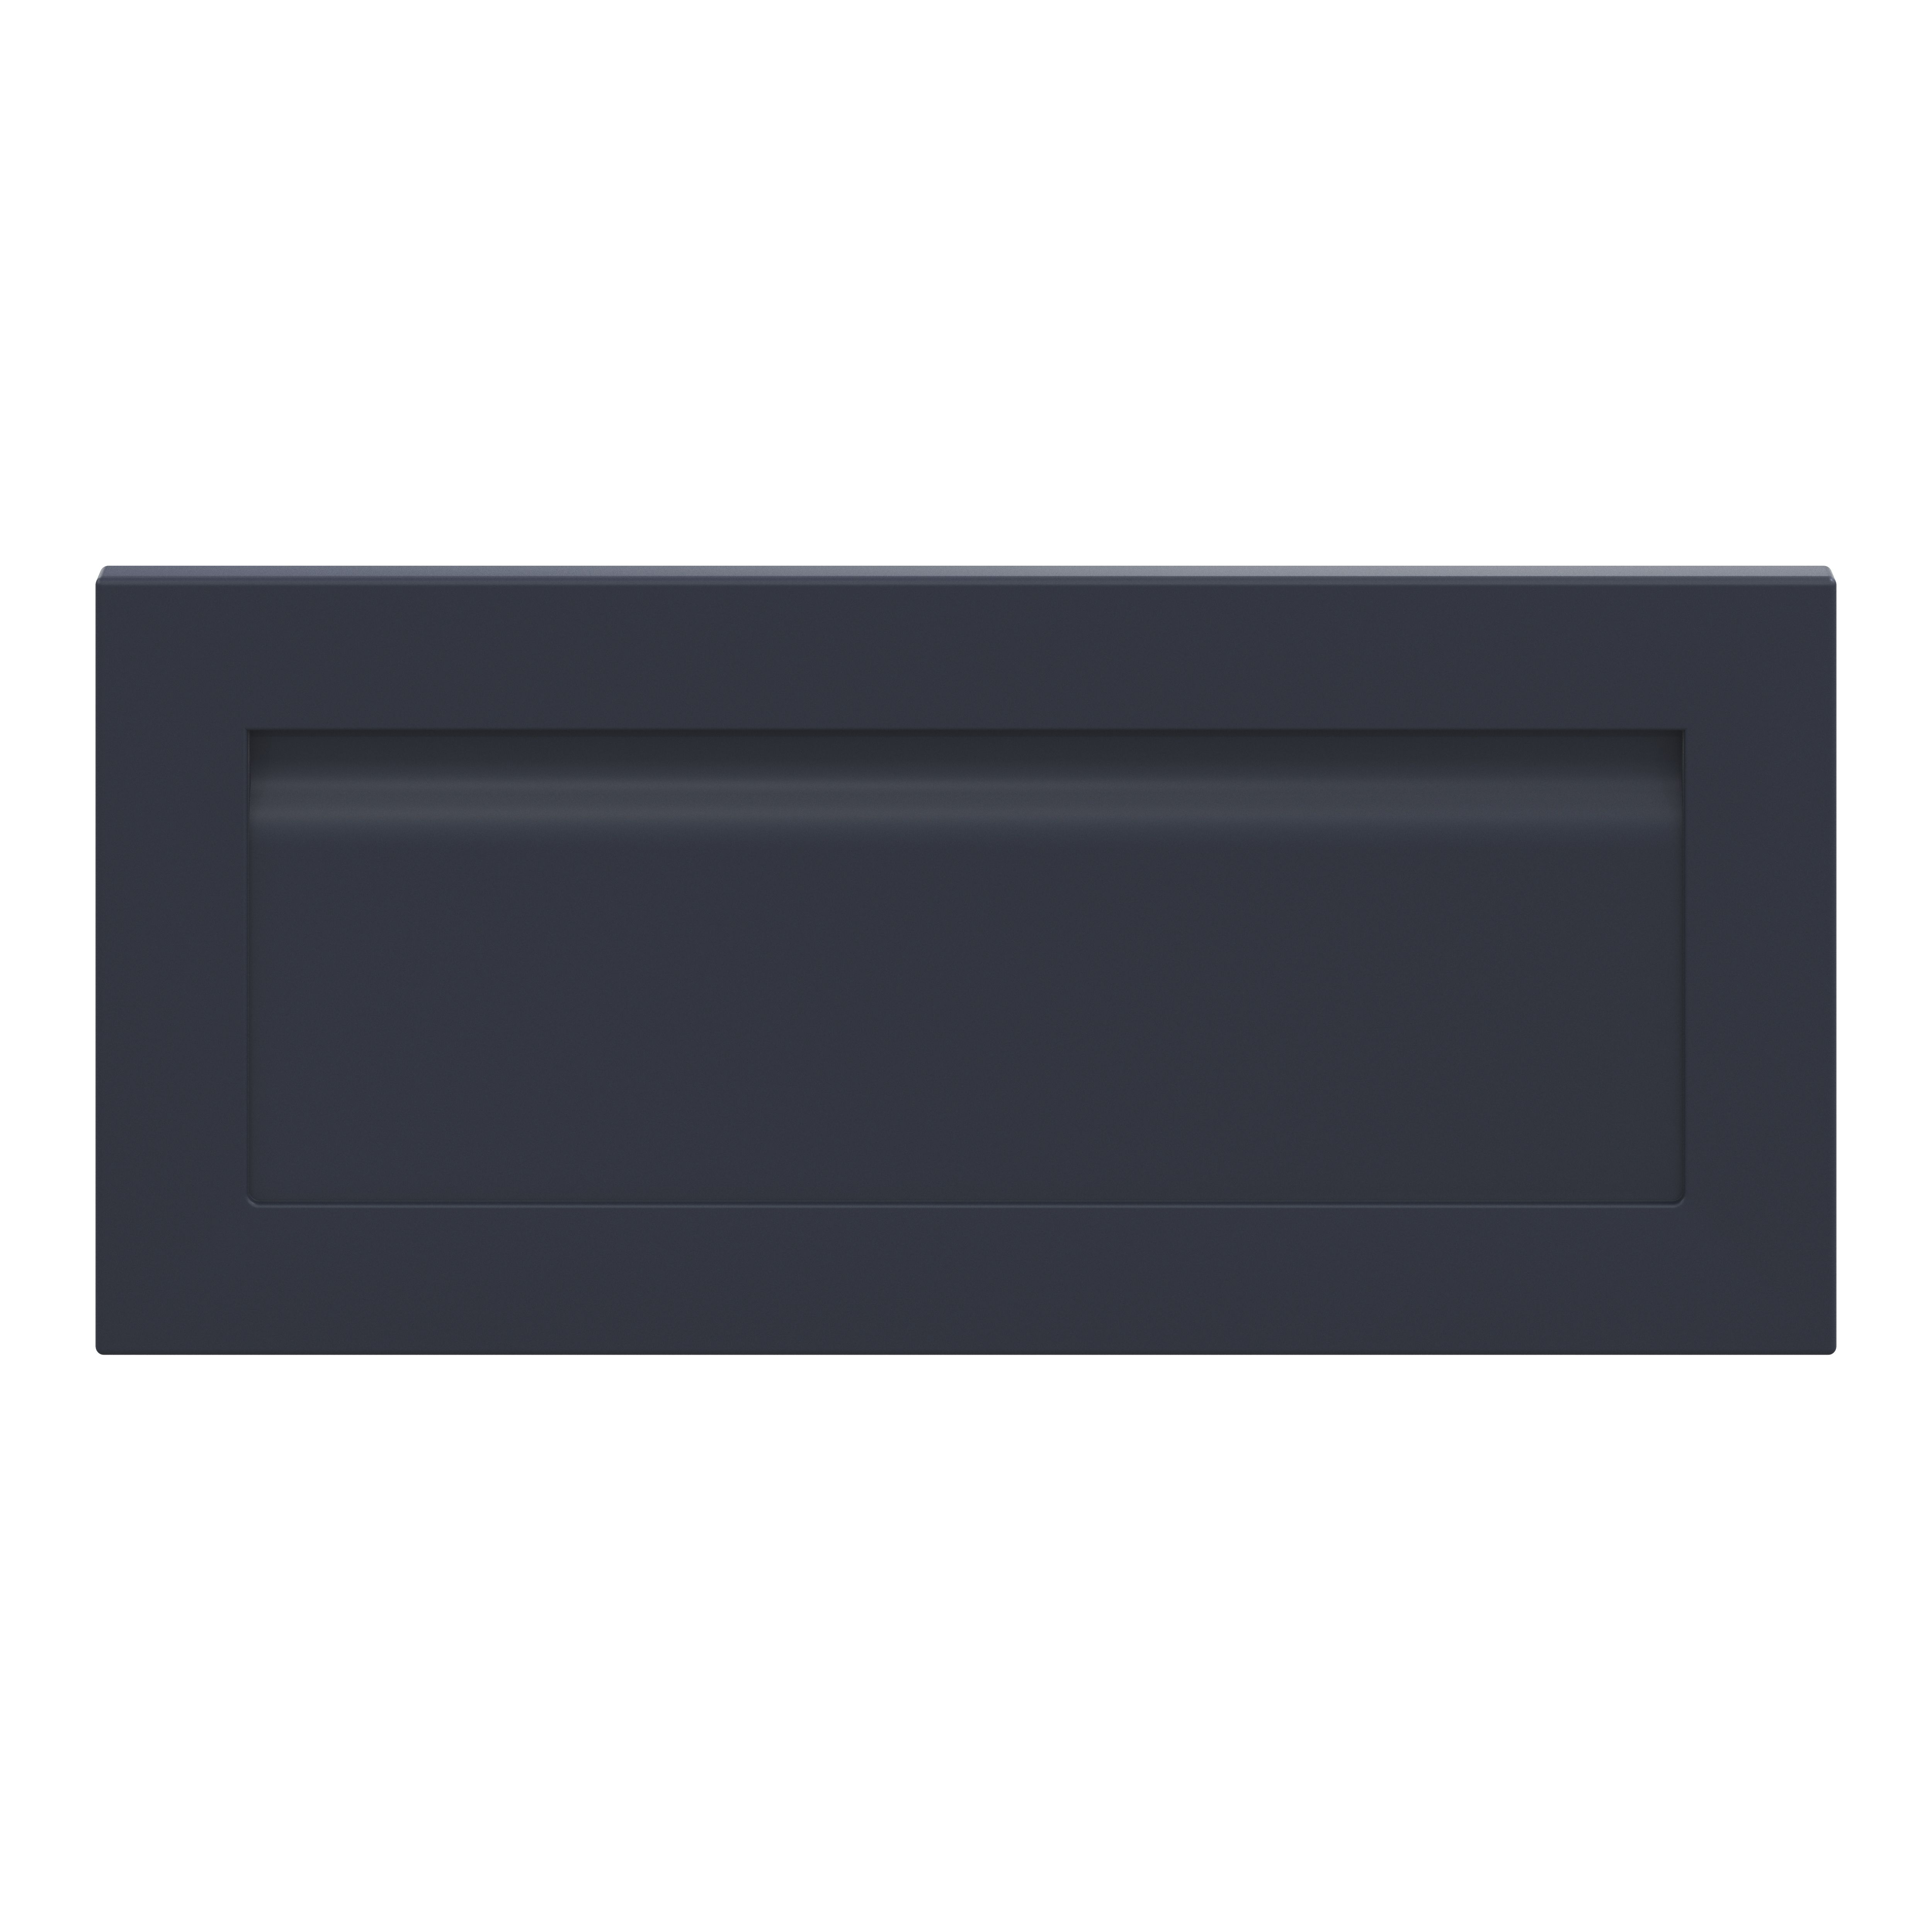 GoodHome Garcinia Matt navy blue Drawer front, bridging door & bi fold door, (W)800mm (H)356mm (T)20mm